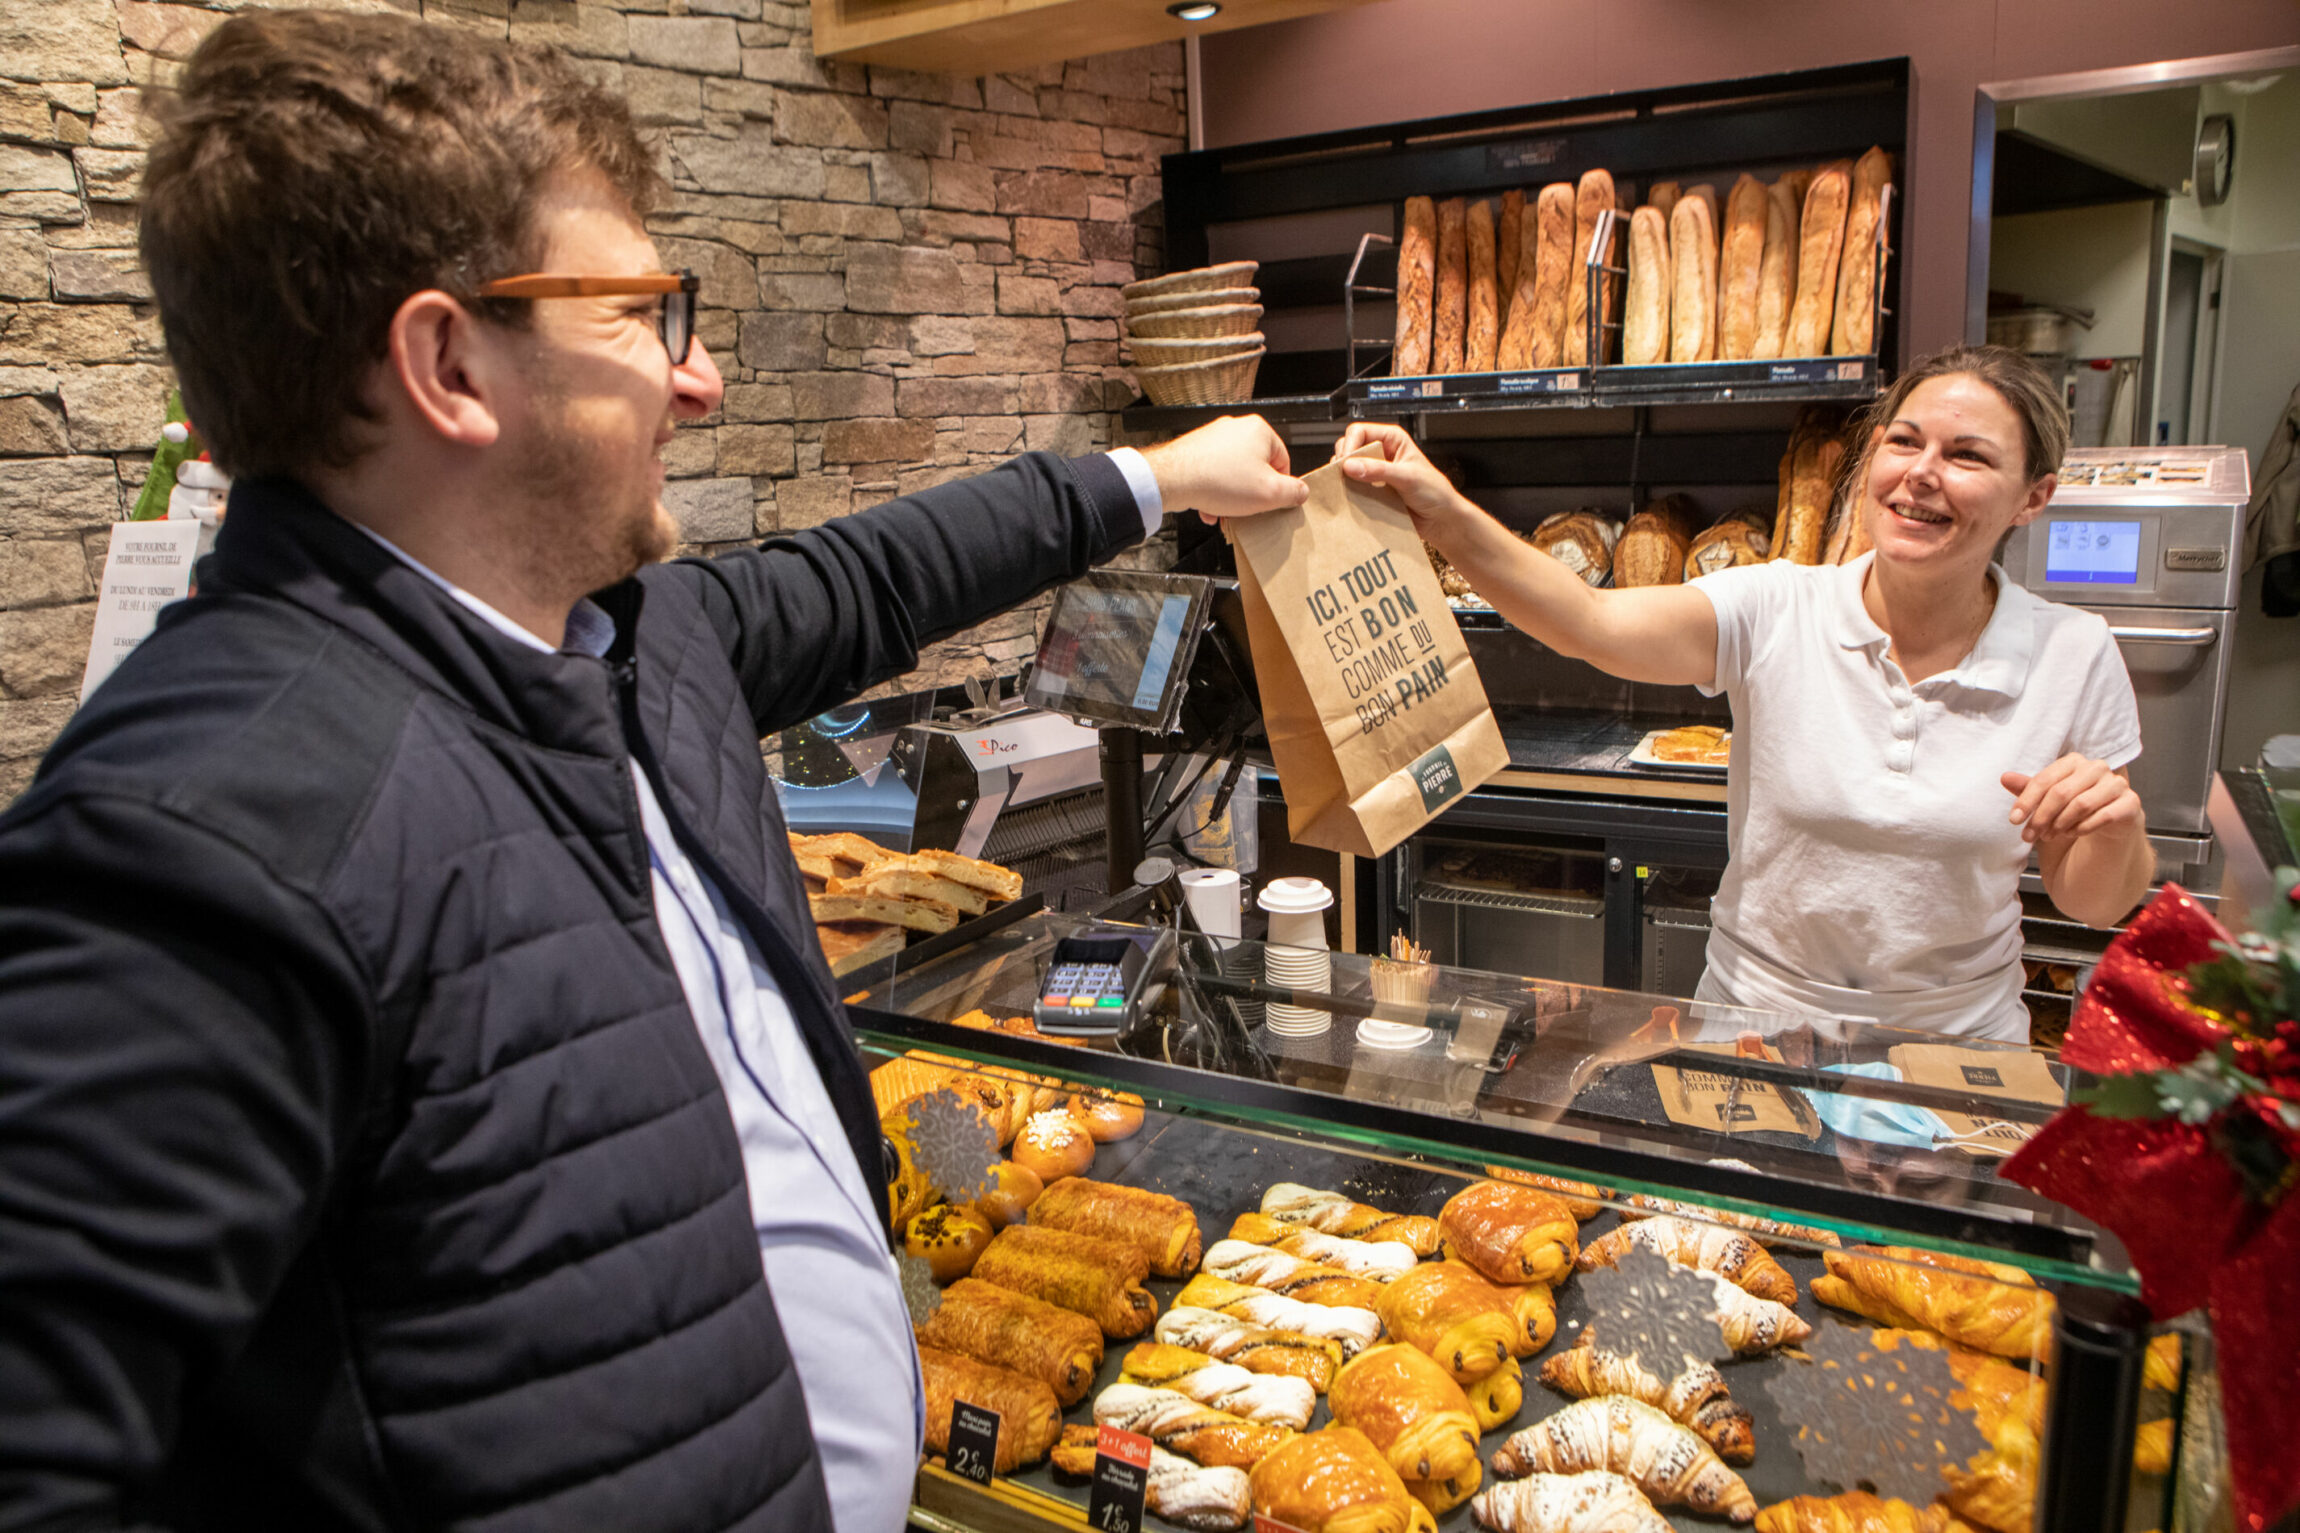 Un client dans une boulangerie prenant son sac de viennoiserie que le vendeuse lui tend.